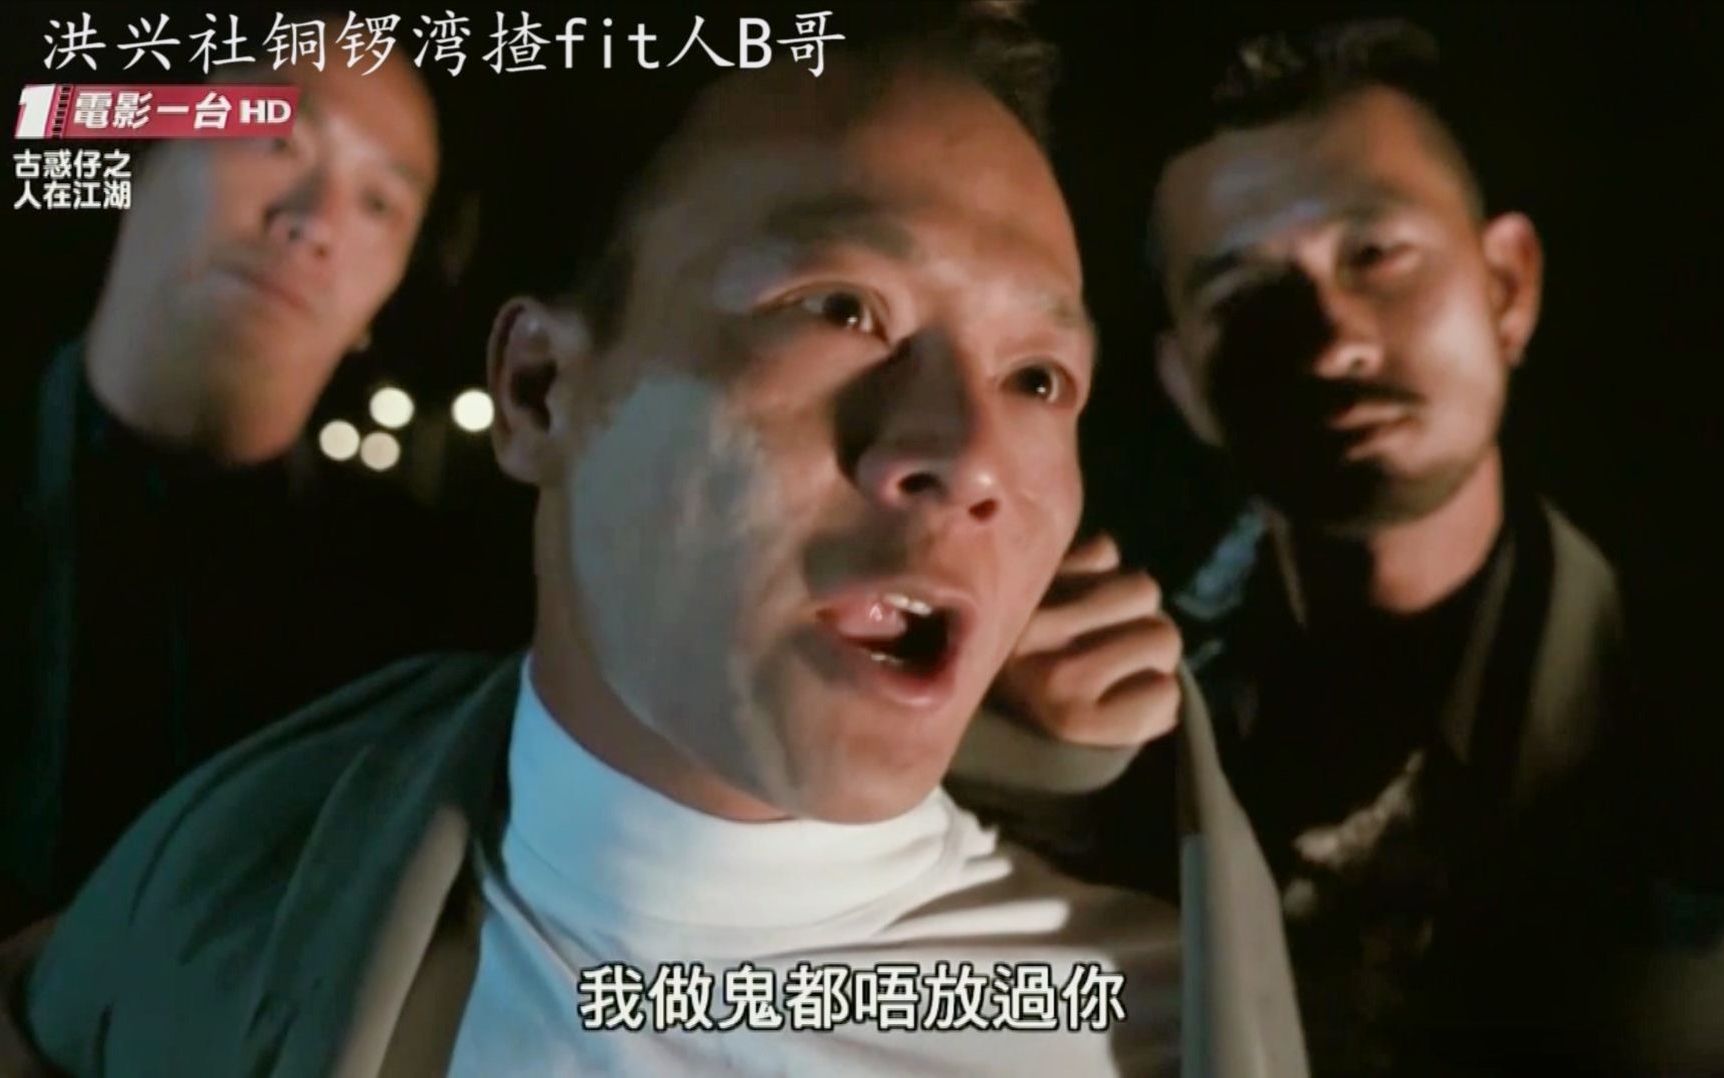 一个人重复当无间道那是什么电影 香港的 黑帮的卧底又是警察卧底